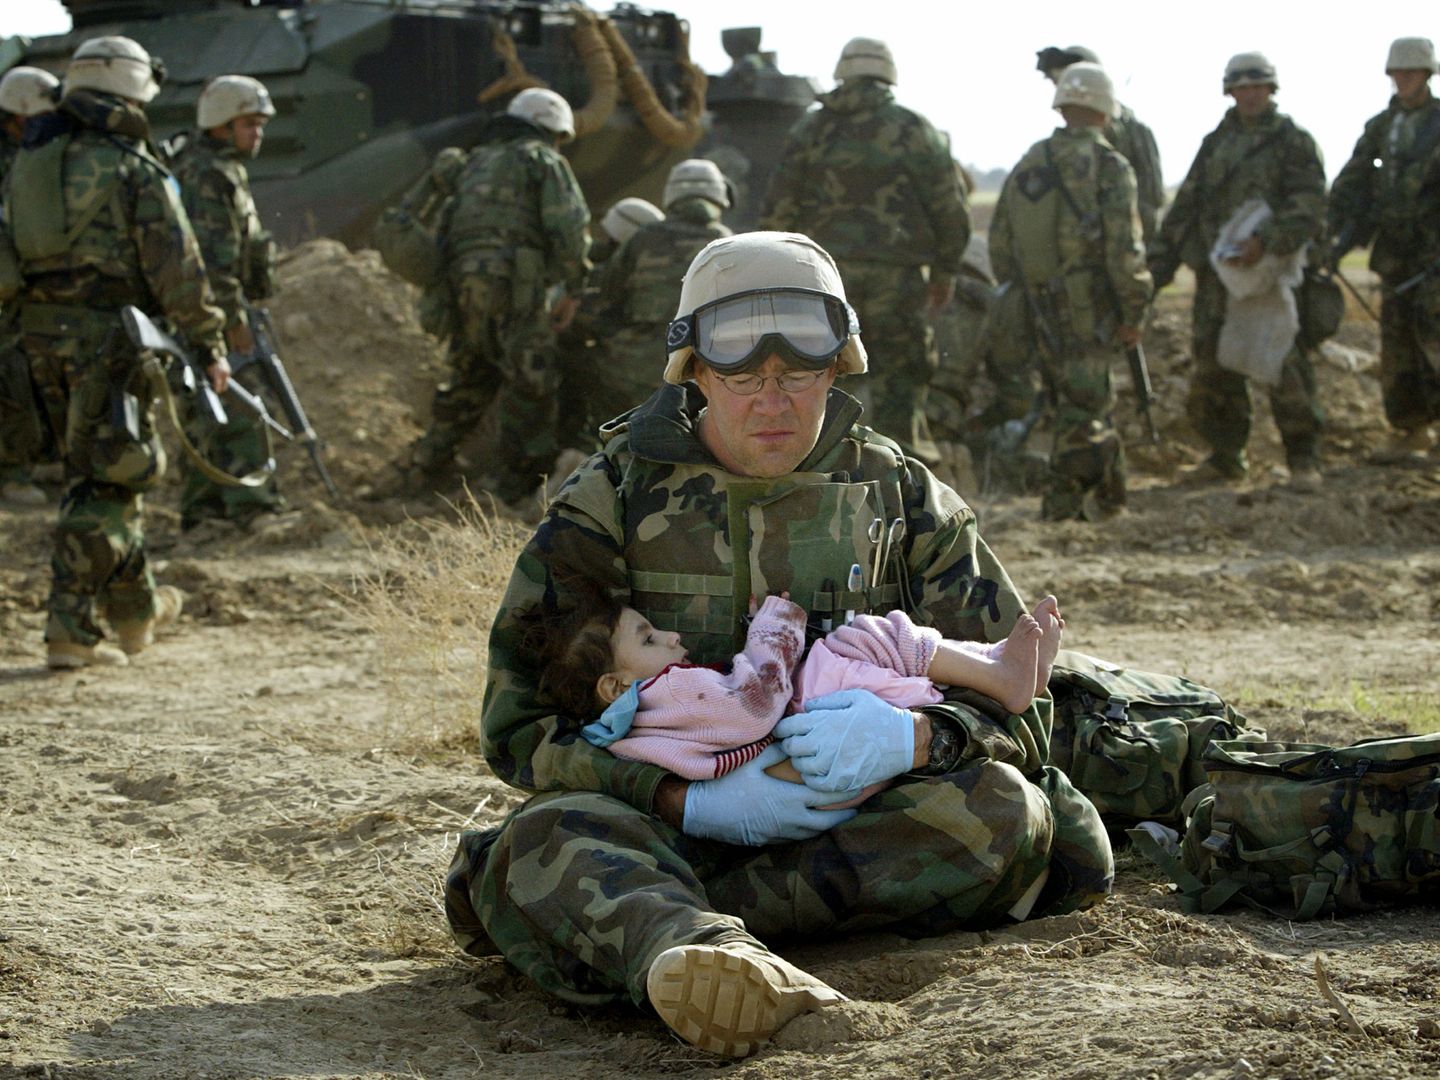 Un 'marine' estadounidense del cuerpo sanitario sostiene a un bebé iraquí durante la invasión, en marzo de 2003. (Reuters)